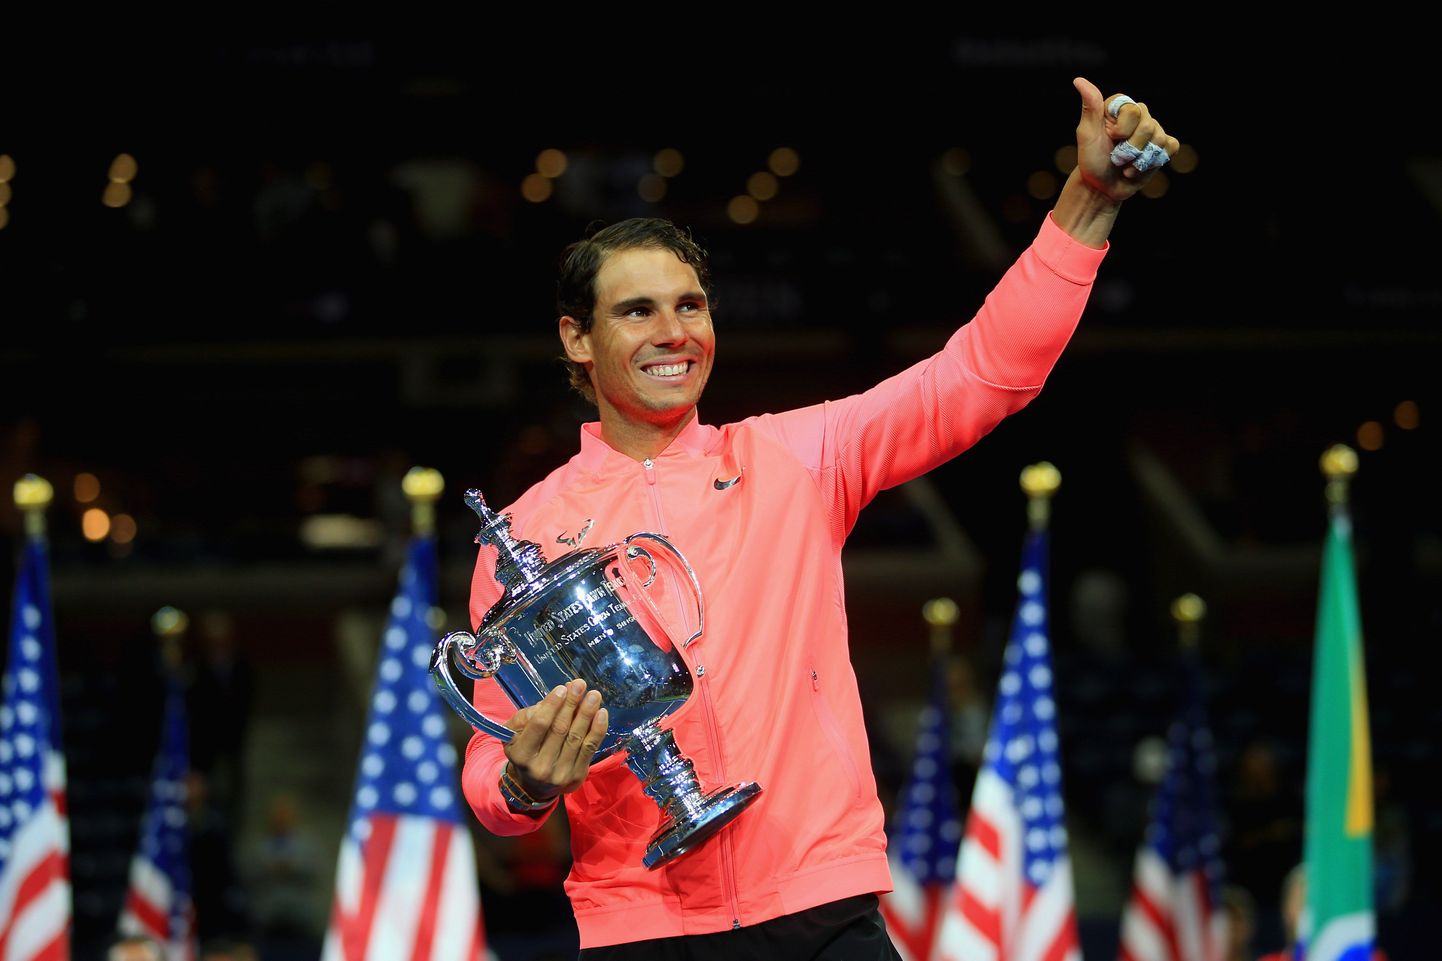 Maailma esinumber Rafael Nadal USA lahtiste esikohatrofeega.